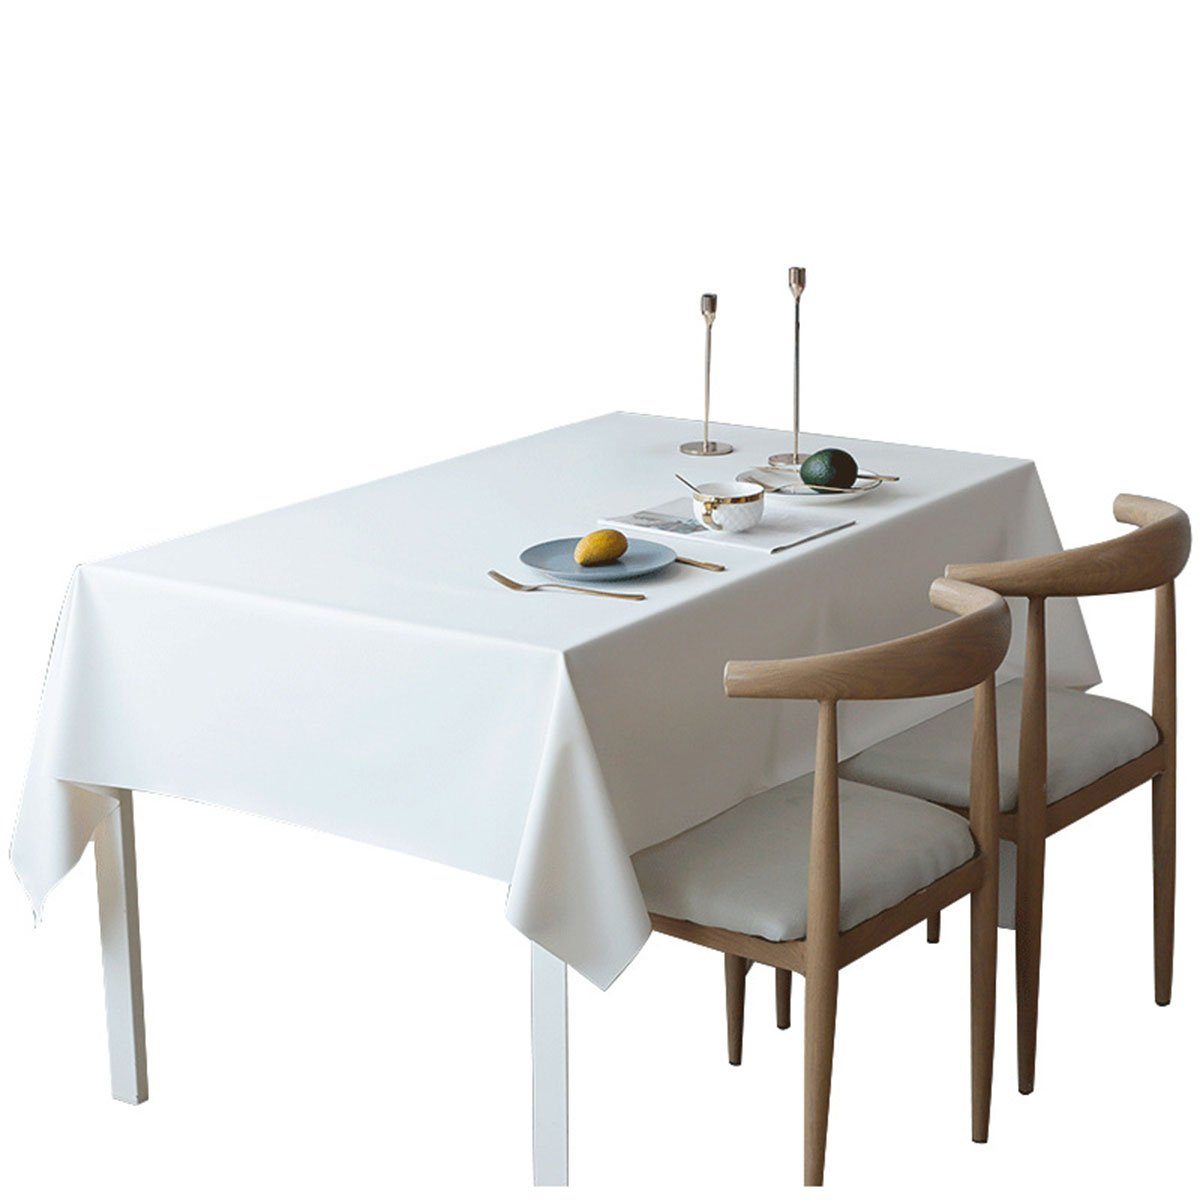 CTGtree Tischdecke Tischdecke, wasser- und ölbeständig, rechteckige Tischdecke hellgelb